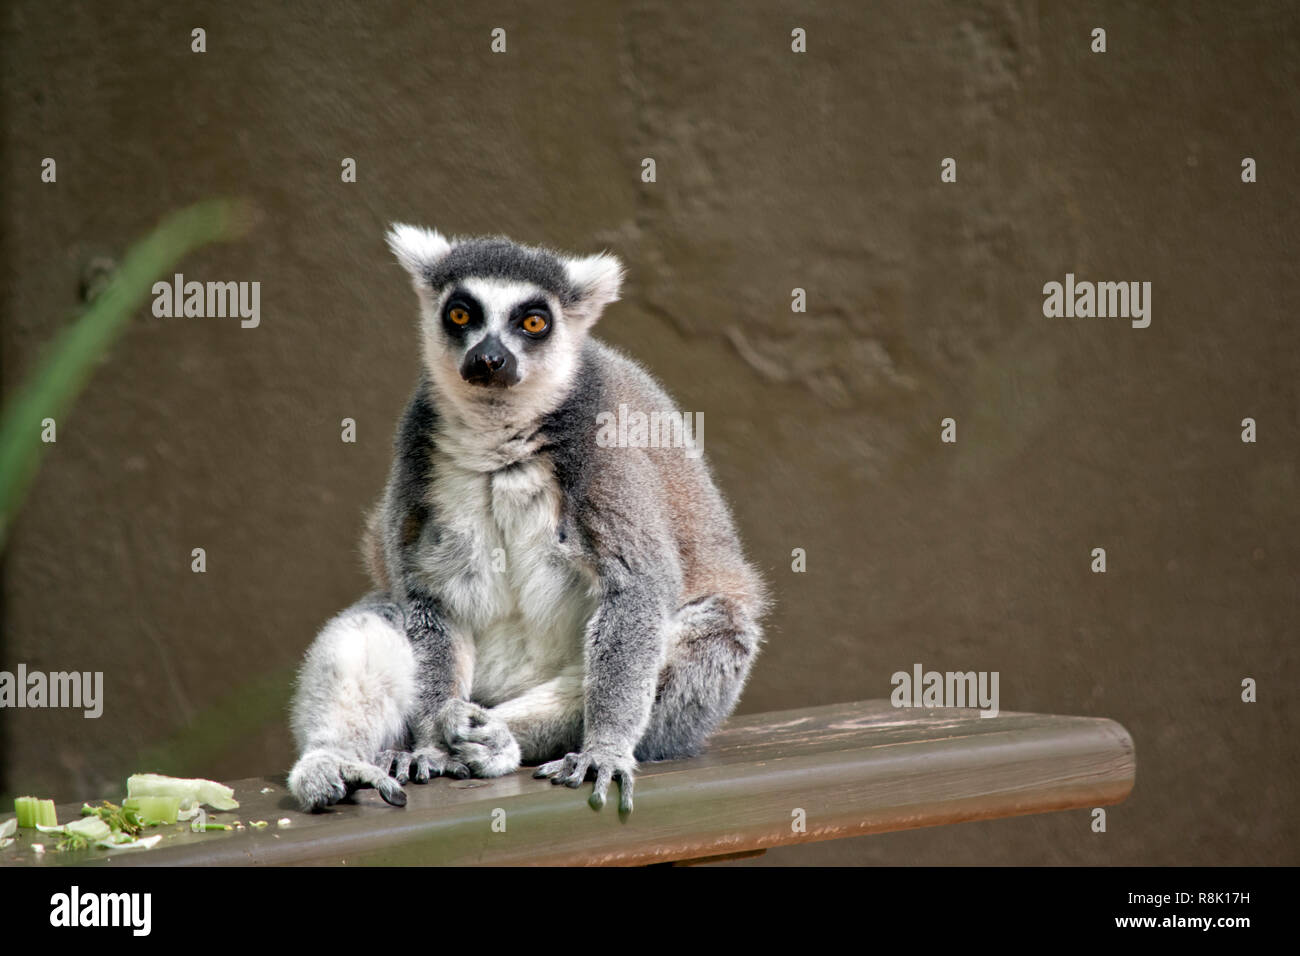 El lémur de cola de anillo descansa sobre una plancha de madera Foto de stock